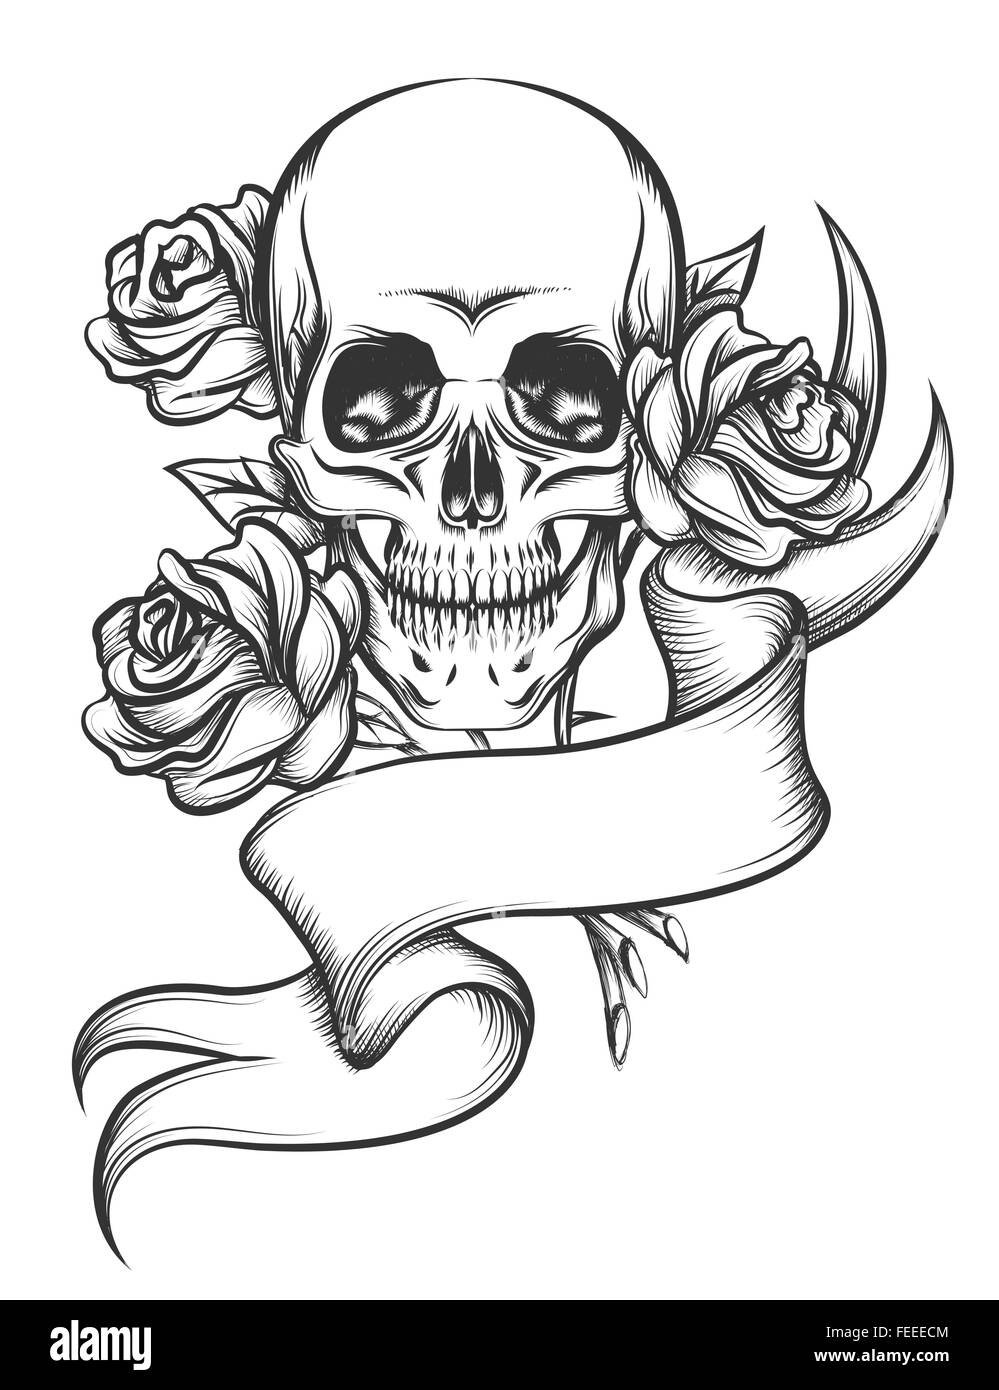 Crâne humain avec des roses et ruban blanc. Illustration dans le style de tatouage isolé sur fond blanc Illustration de Vecteur